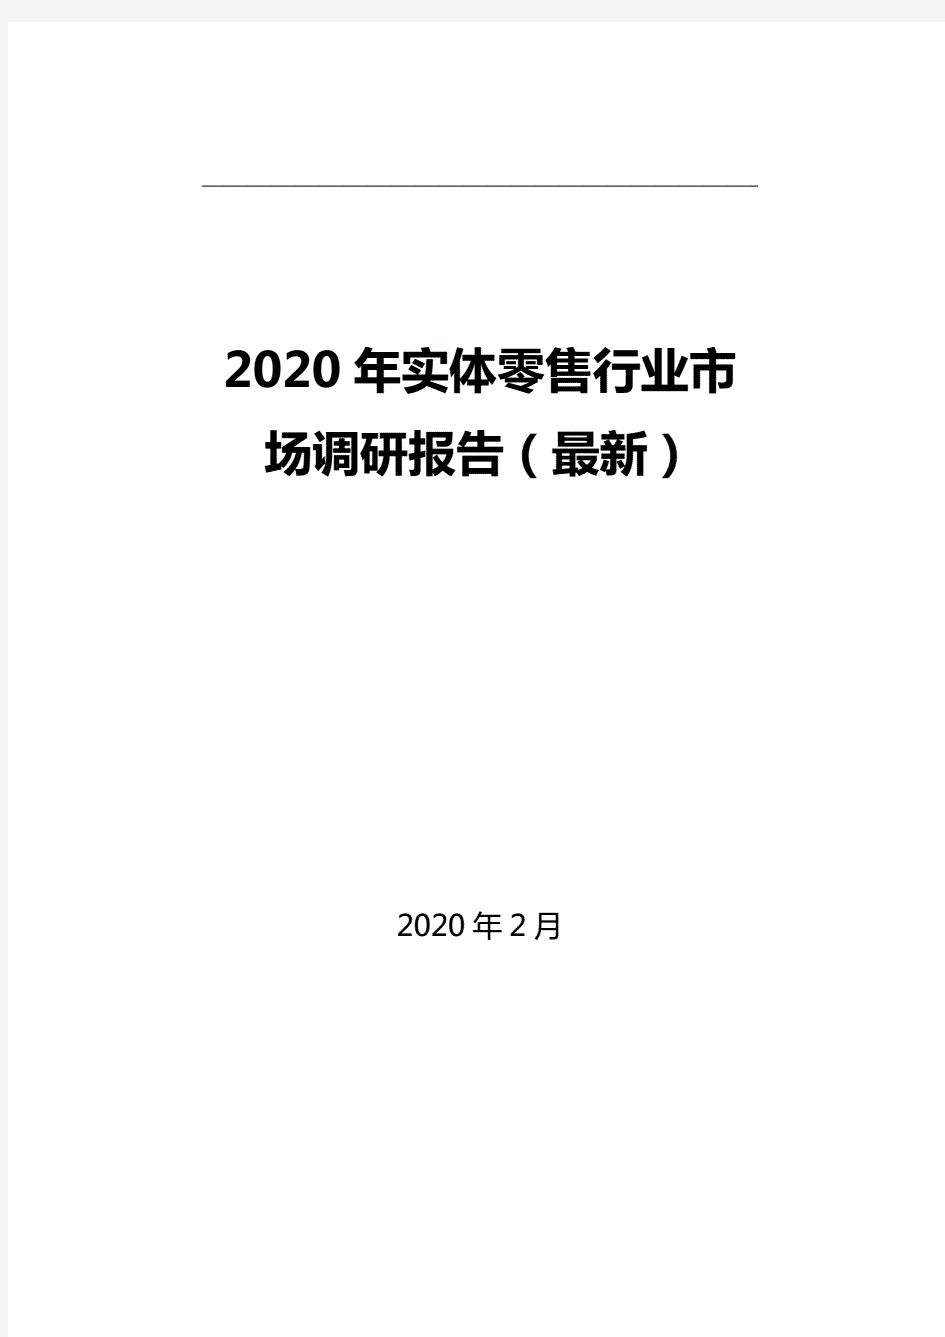 2020年实体零售行业市场调研报告(最新)